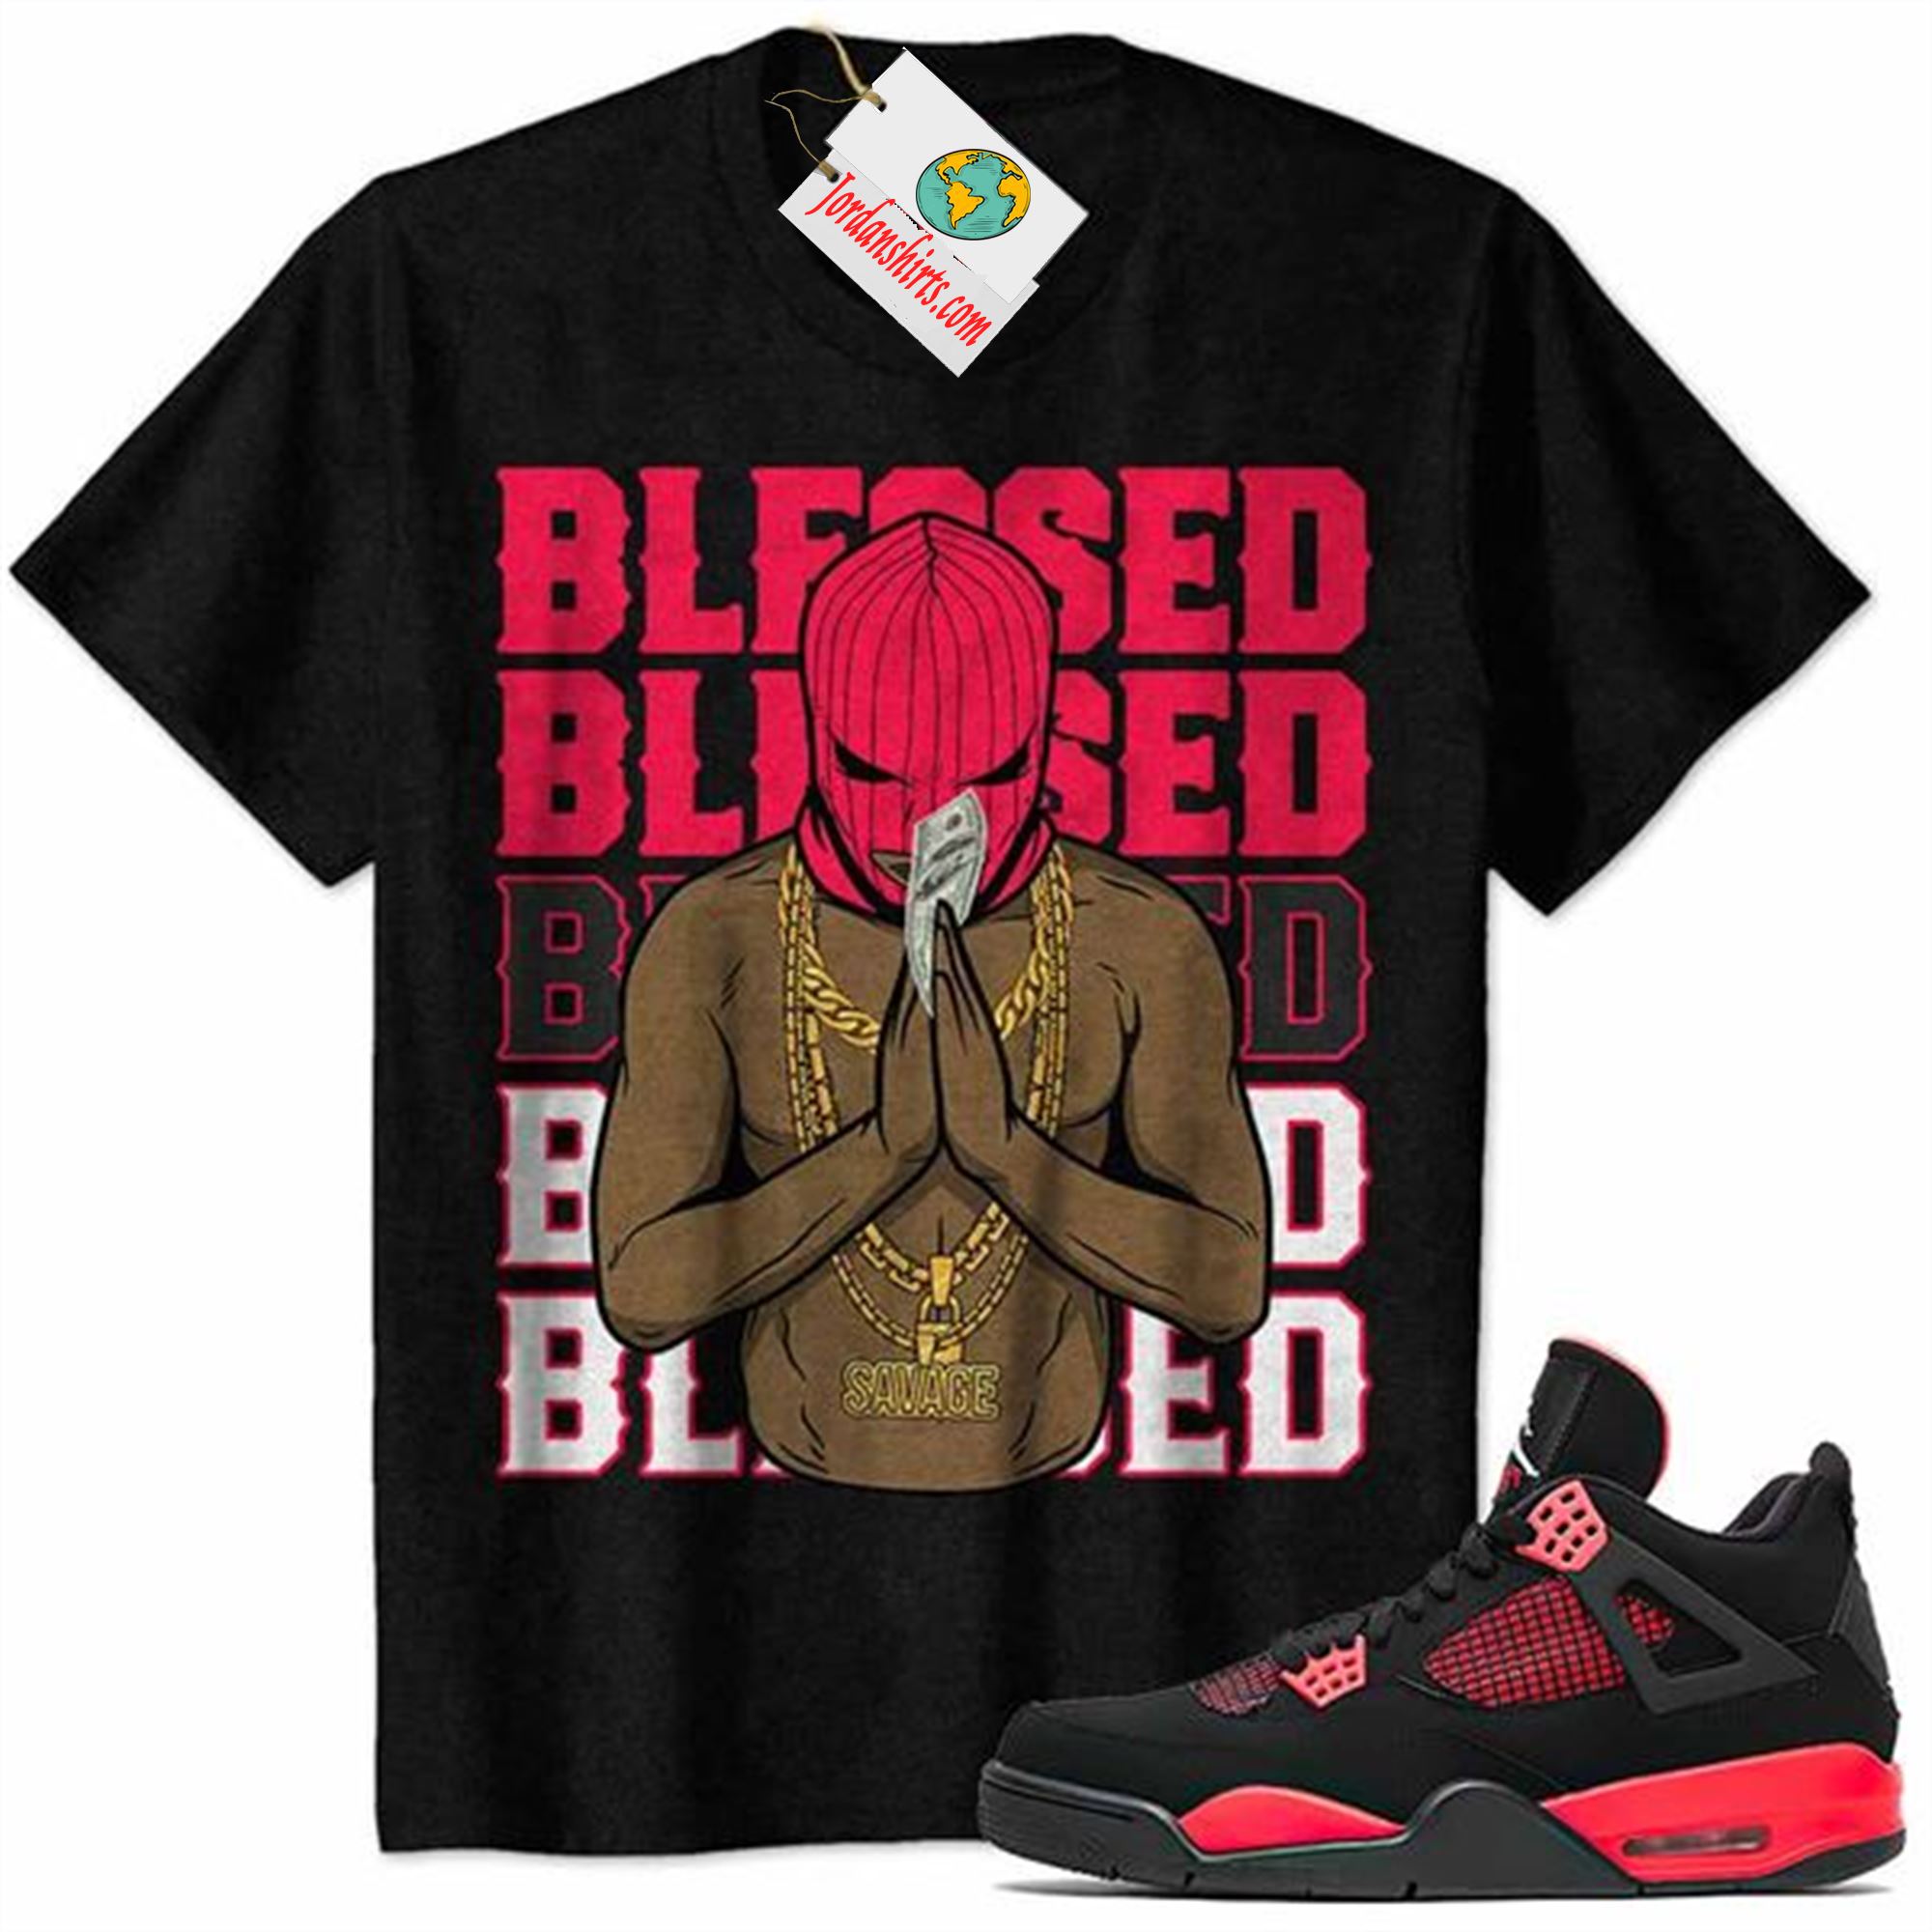 Jordan 4 Shirt, Gangster Ski Mask Man Savage Blessed Black Air Jordan 4 Red Thunder 4s Full Size Up To 5xl